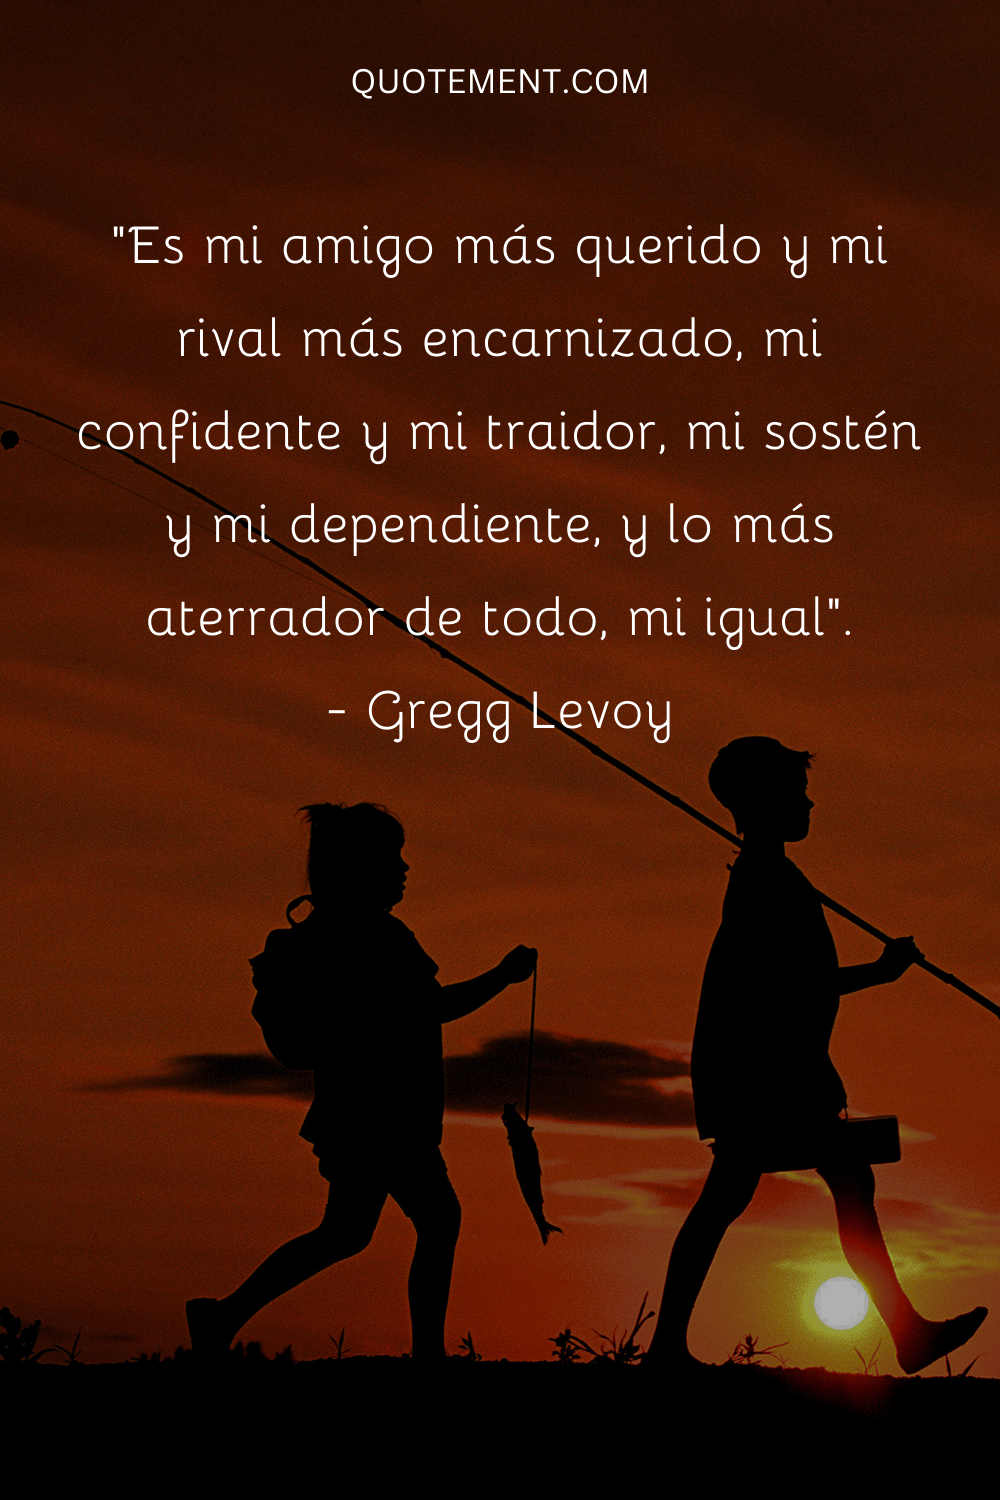 "Es mi amigo más querido y mi rival más acérrimo, mi confidente y mi traidor, mi sostén y mi dependiente, y lo más aterrador de todo, mi igual". - Gregg Levoy